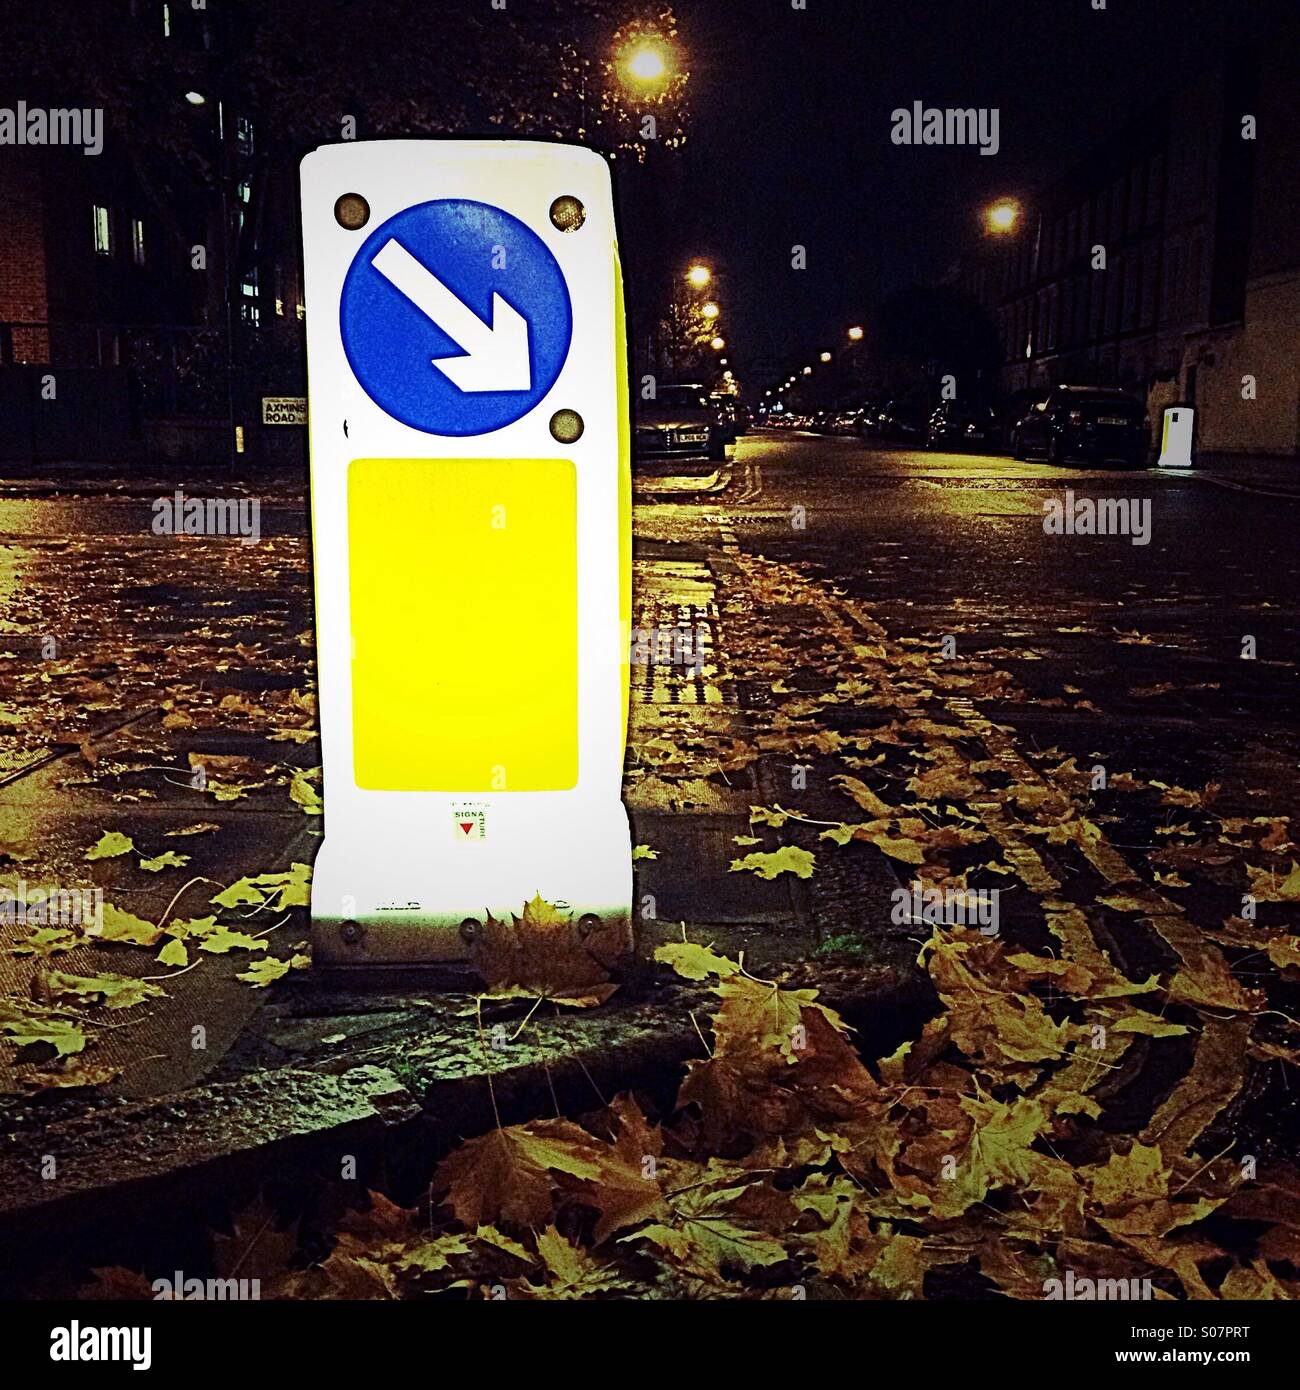 London street couverts de feuilles jaunes Banque D'Images